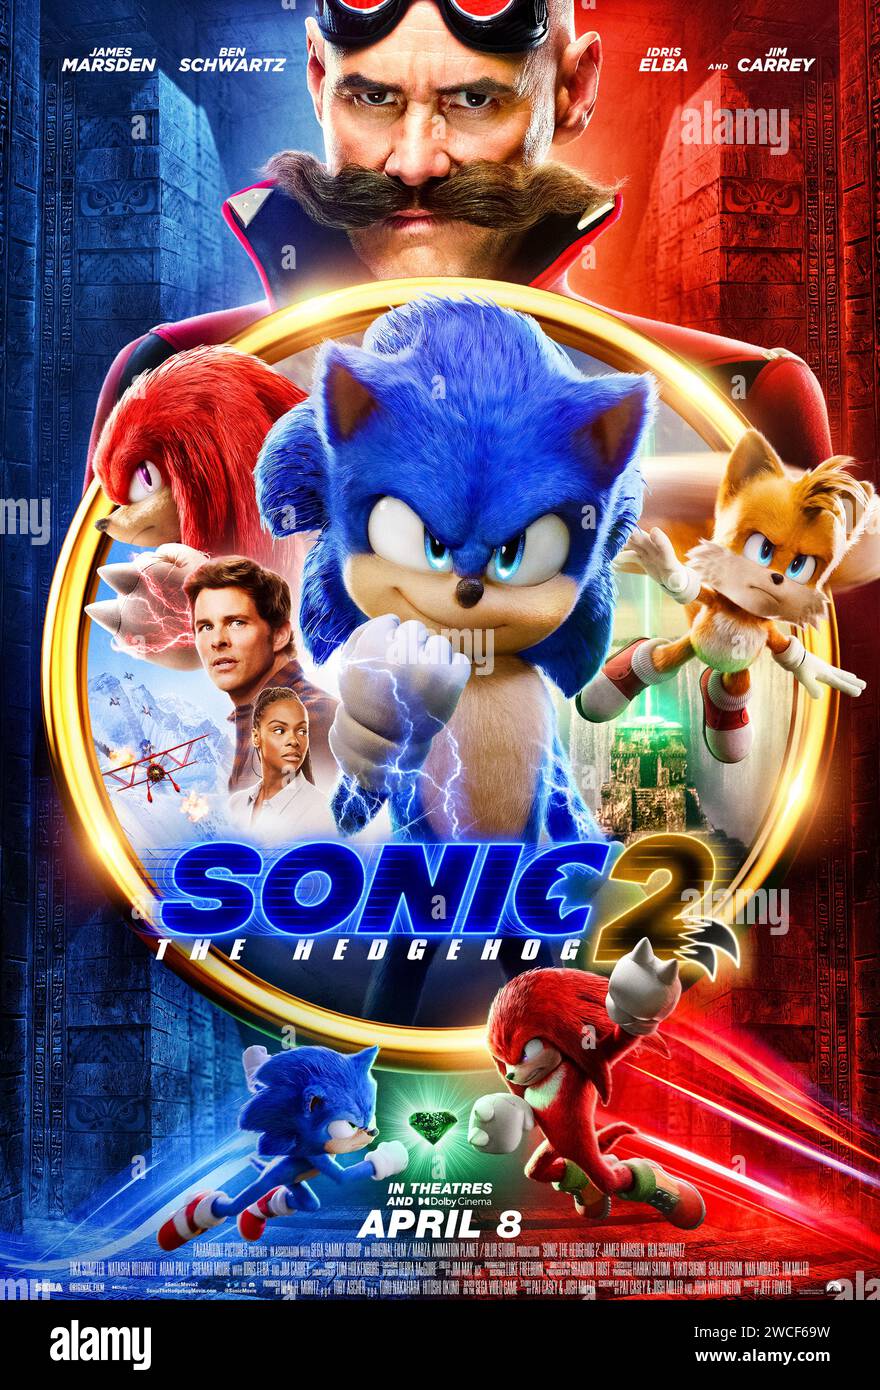 Sonic the Hedgehog 2 (2022) von Jeff Fowler mit Jim Carrey, James Marsden und Tika Sumpter. Dr. Robotnik kehrt zurück, diesmal mit einem neuen Partner, Knuckles, auf der Suche nach einem Smaragd, der die Macht hat, Zivilisationen zu bauen und zu zerstören. US-Poster mit einem Blatt. ***NUR REDAKTIONELLE VERWENDUNG*** Credit: BFA / Paramount Pictures Stockfoto